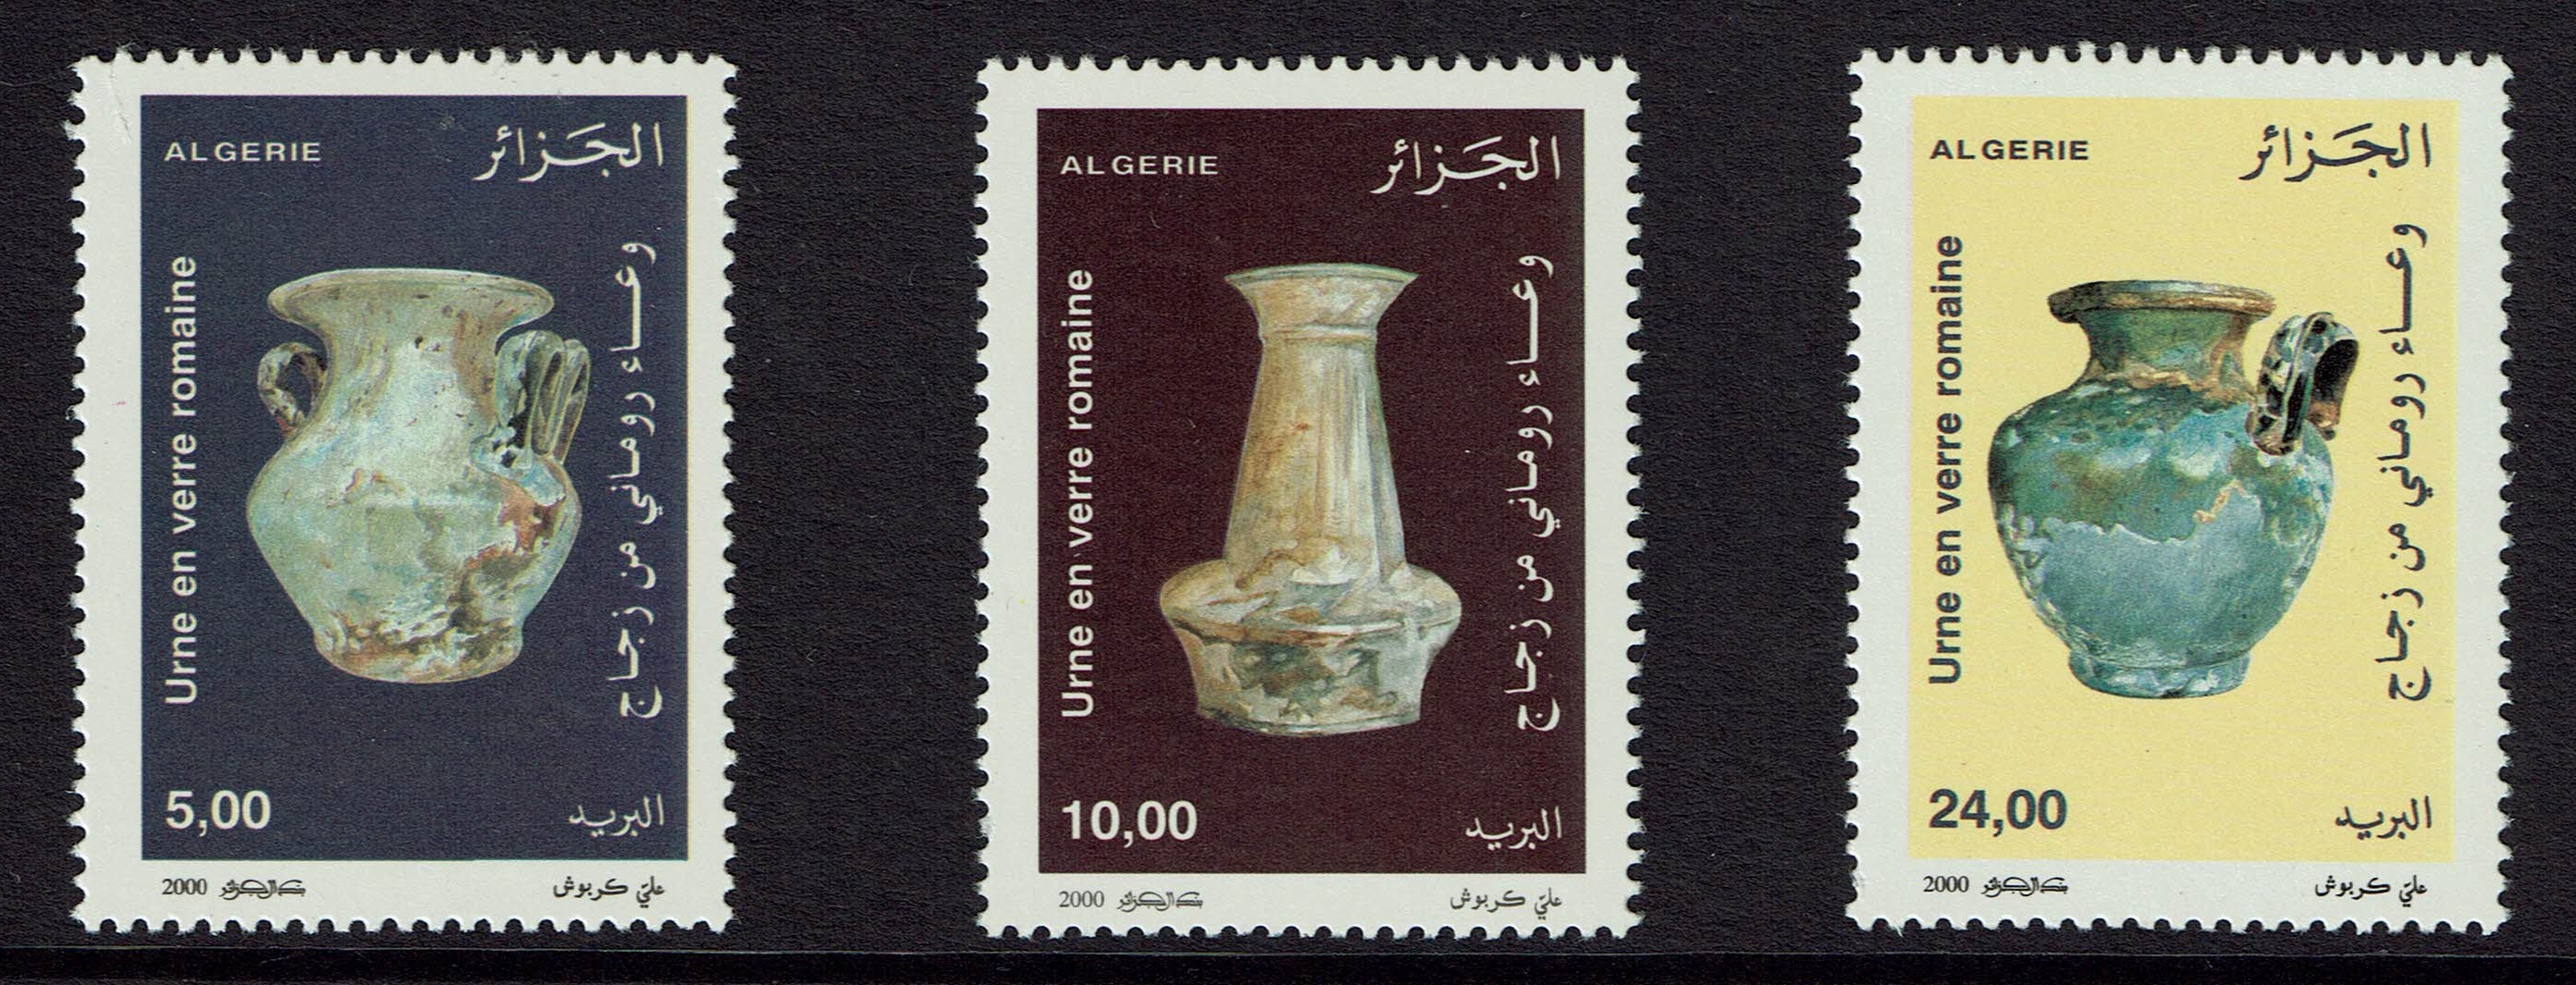 Algeria SG 1347-49